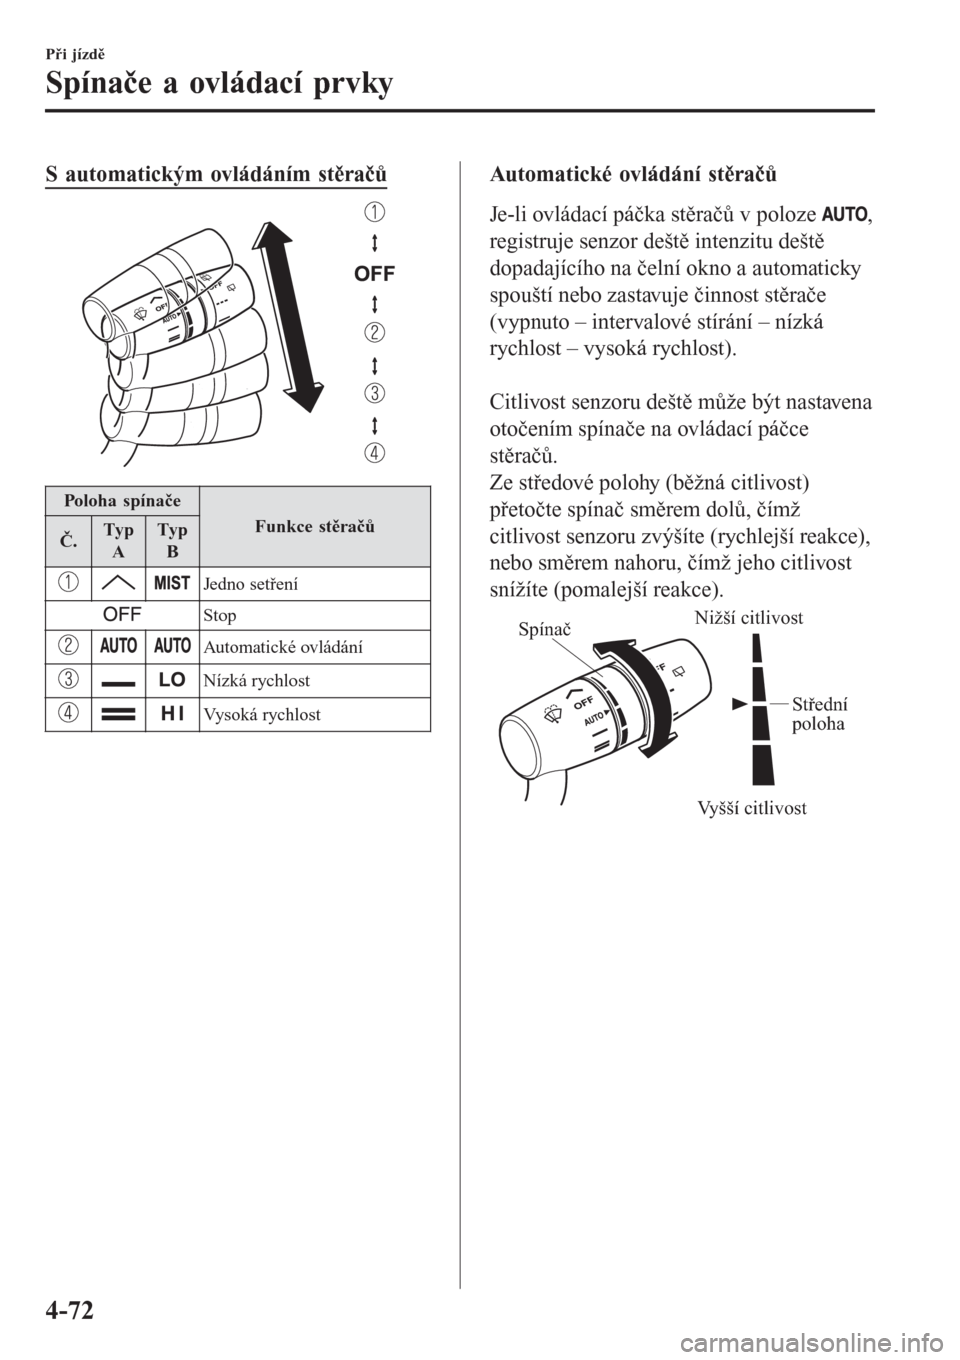 MAZDA MODEL CX-3 2015  Návod k obsluze (in Czech) S automatickým ovládáním stěračů
Poloha spínače
Funkce stěračůČ.Typ
ATyp
B
Jedno setření
Stop
Automatické ovládání
Nízká rychlost
Vysoká rychlost
Automatické ovládání stěra�